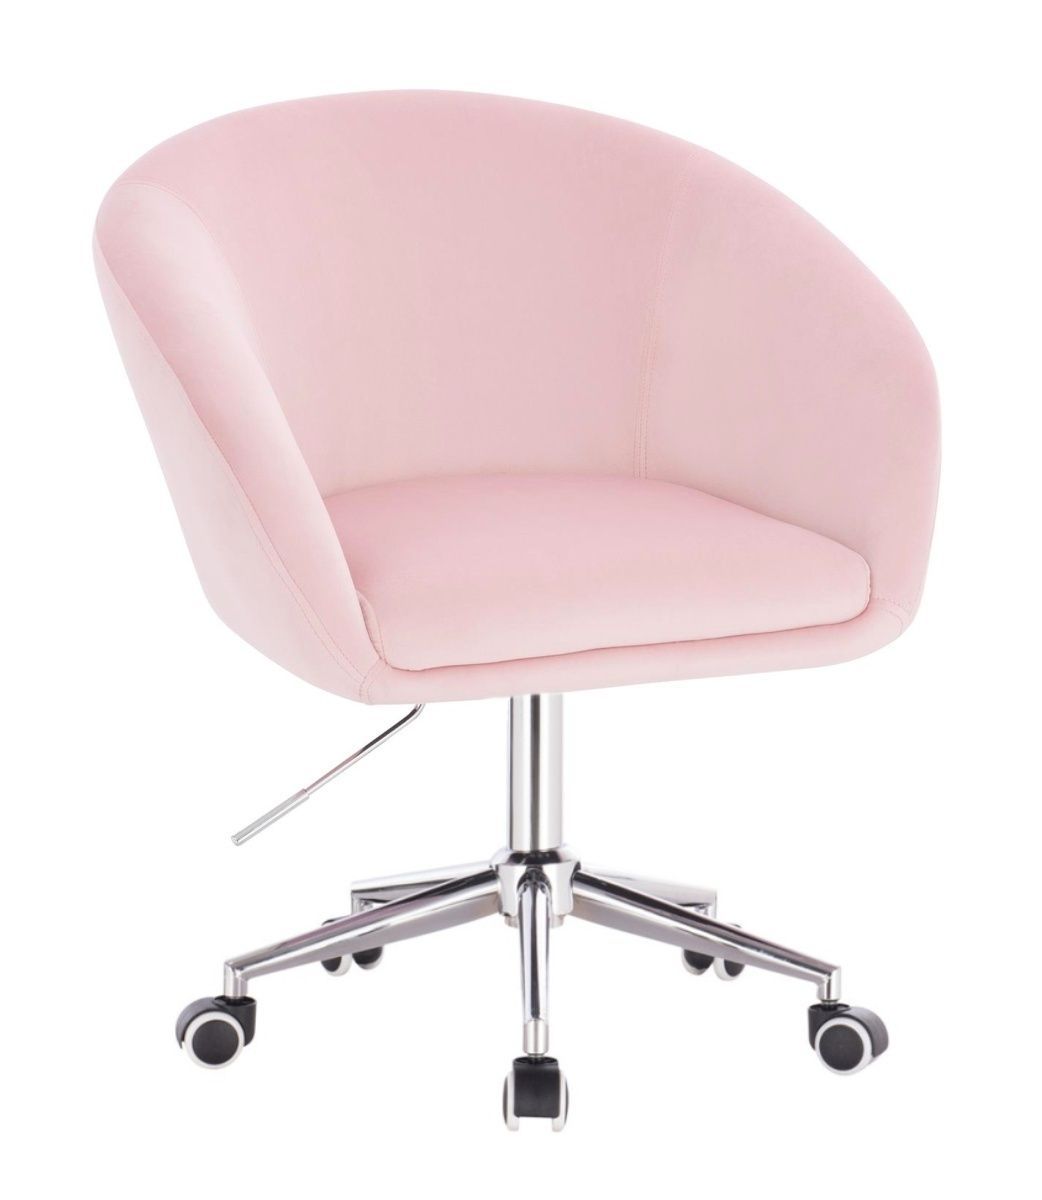 Kosmetická židle VENICE VELUR na stříbrné podstavě s kolečky - růžová